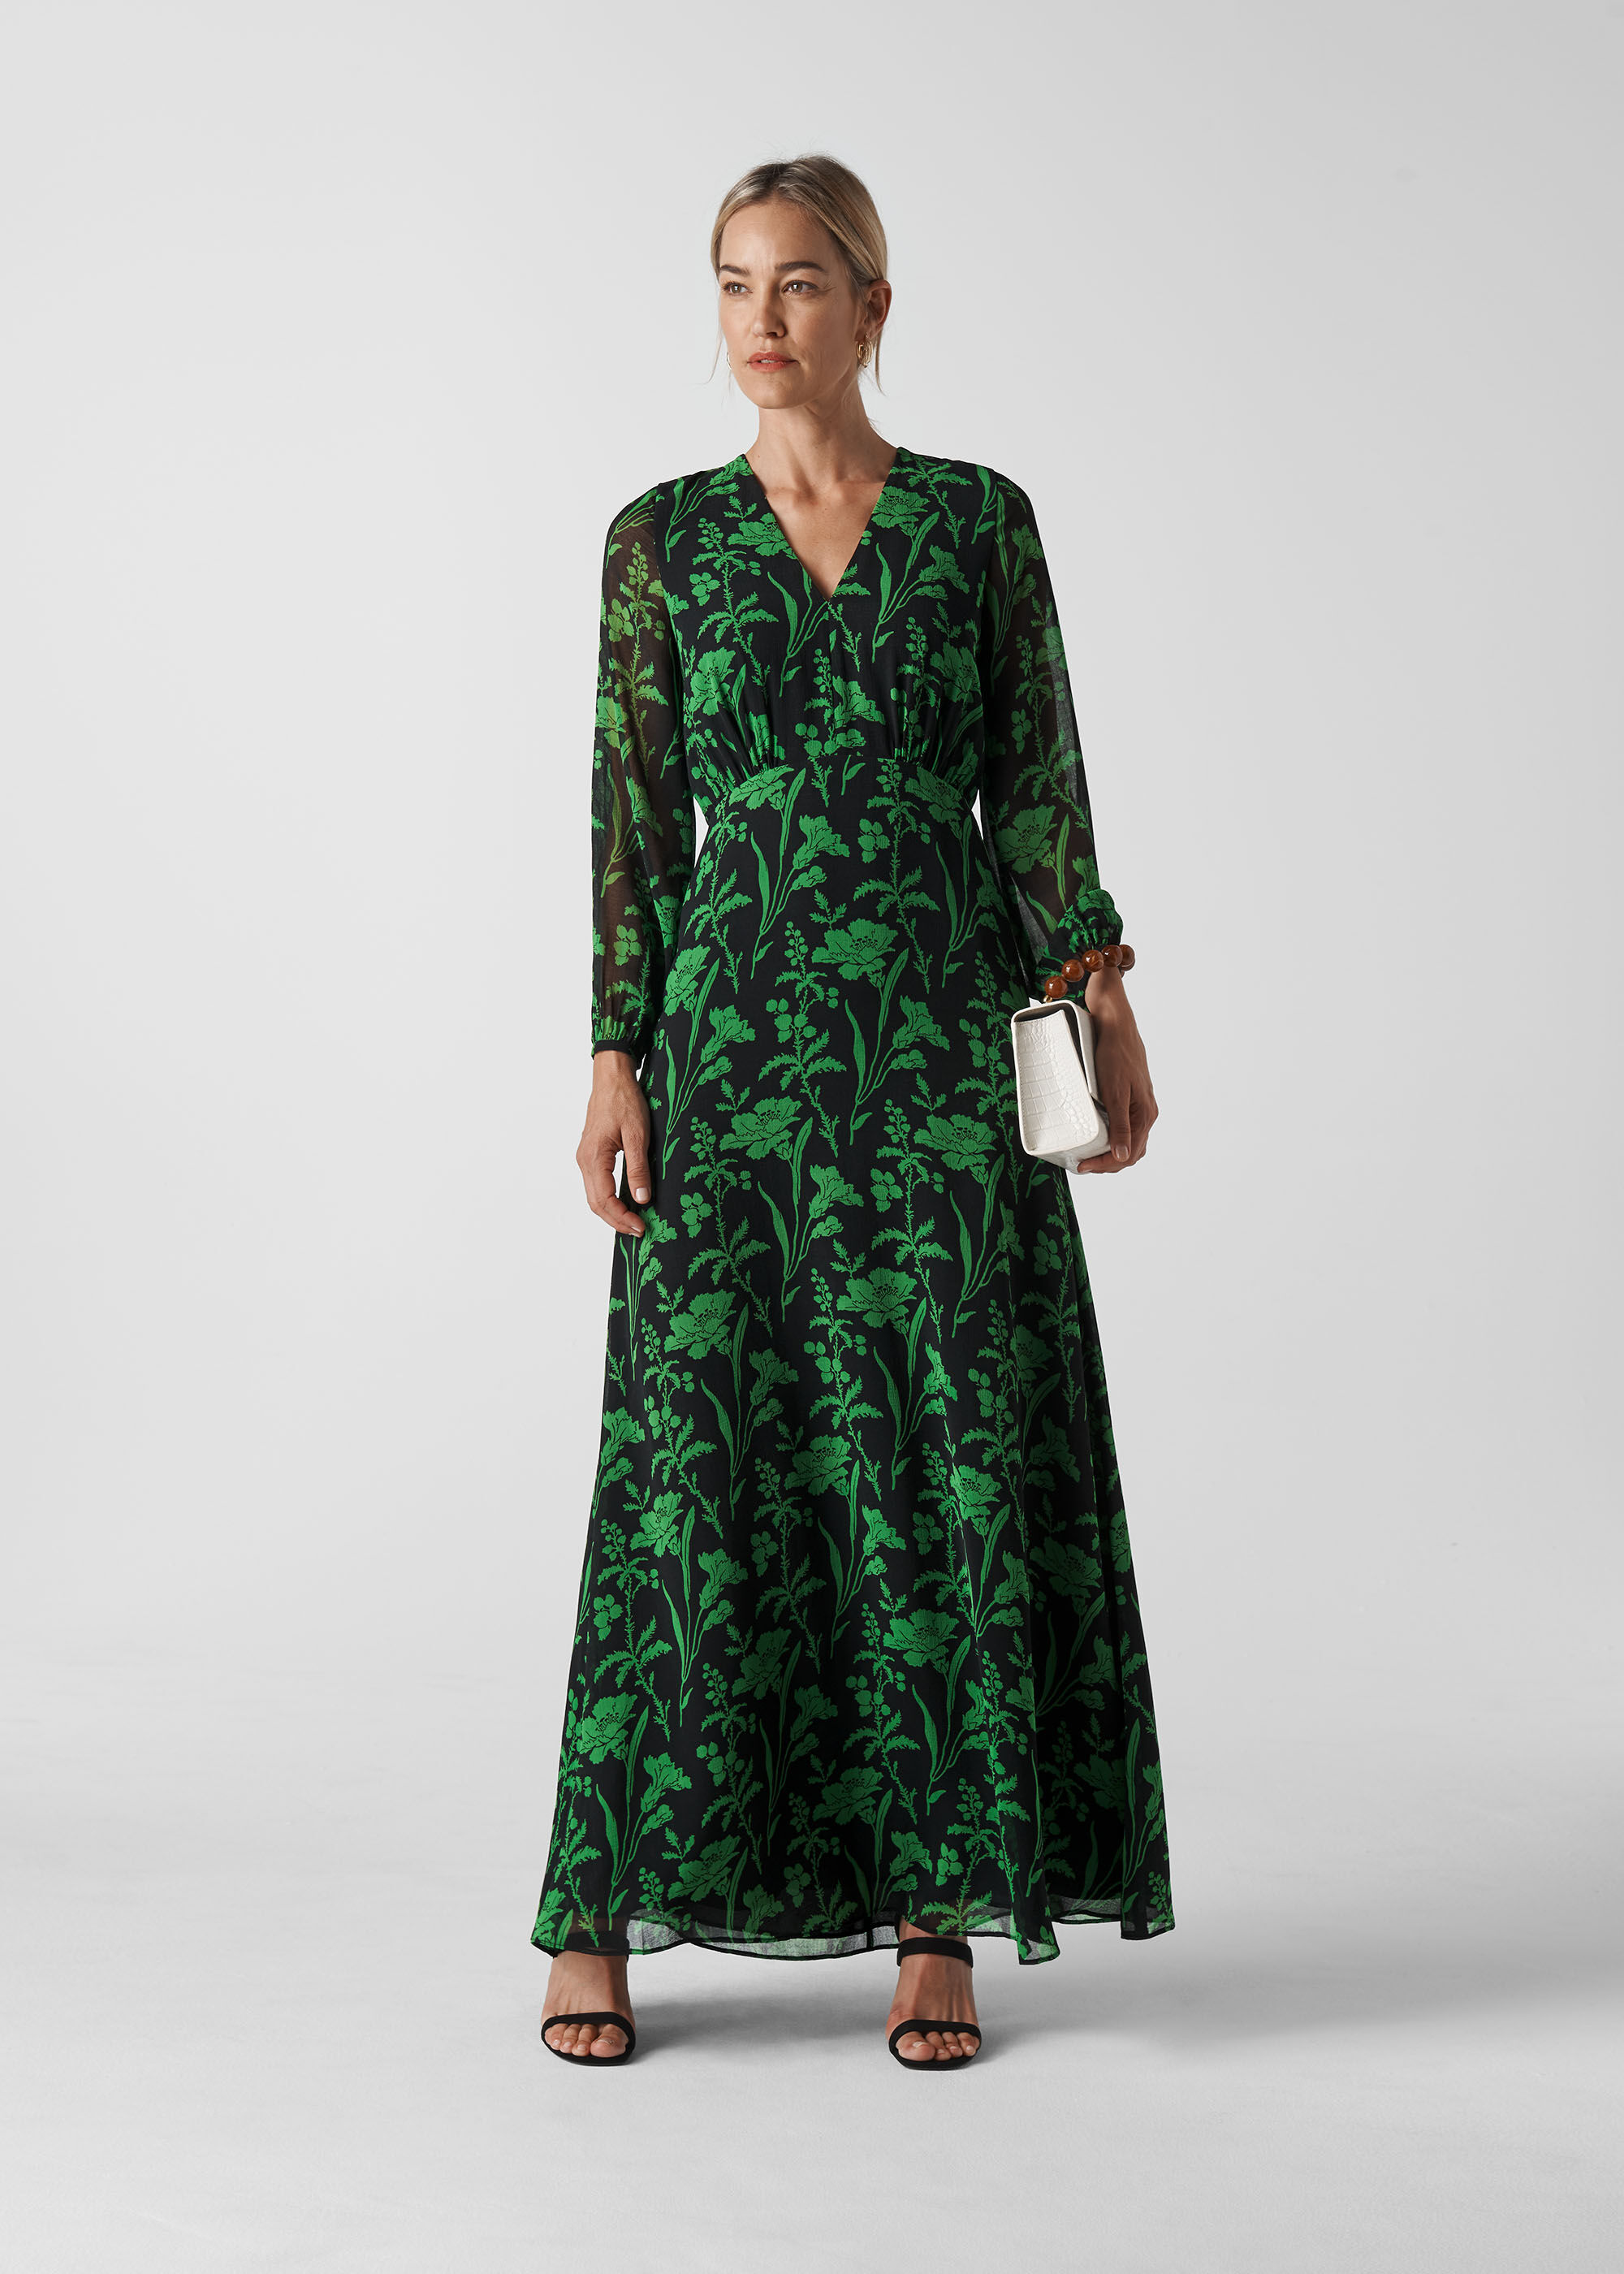 green floral dress maxi